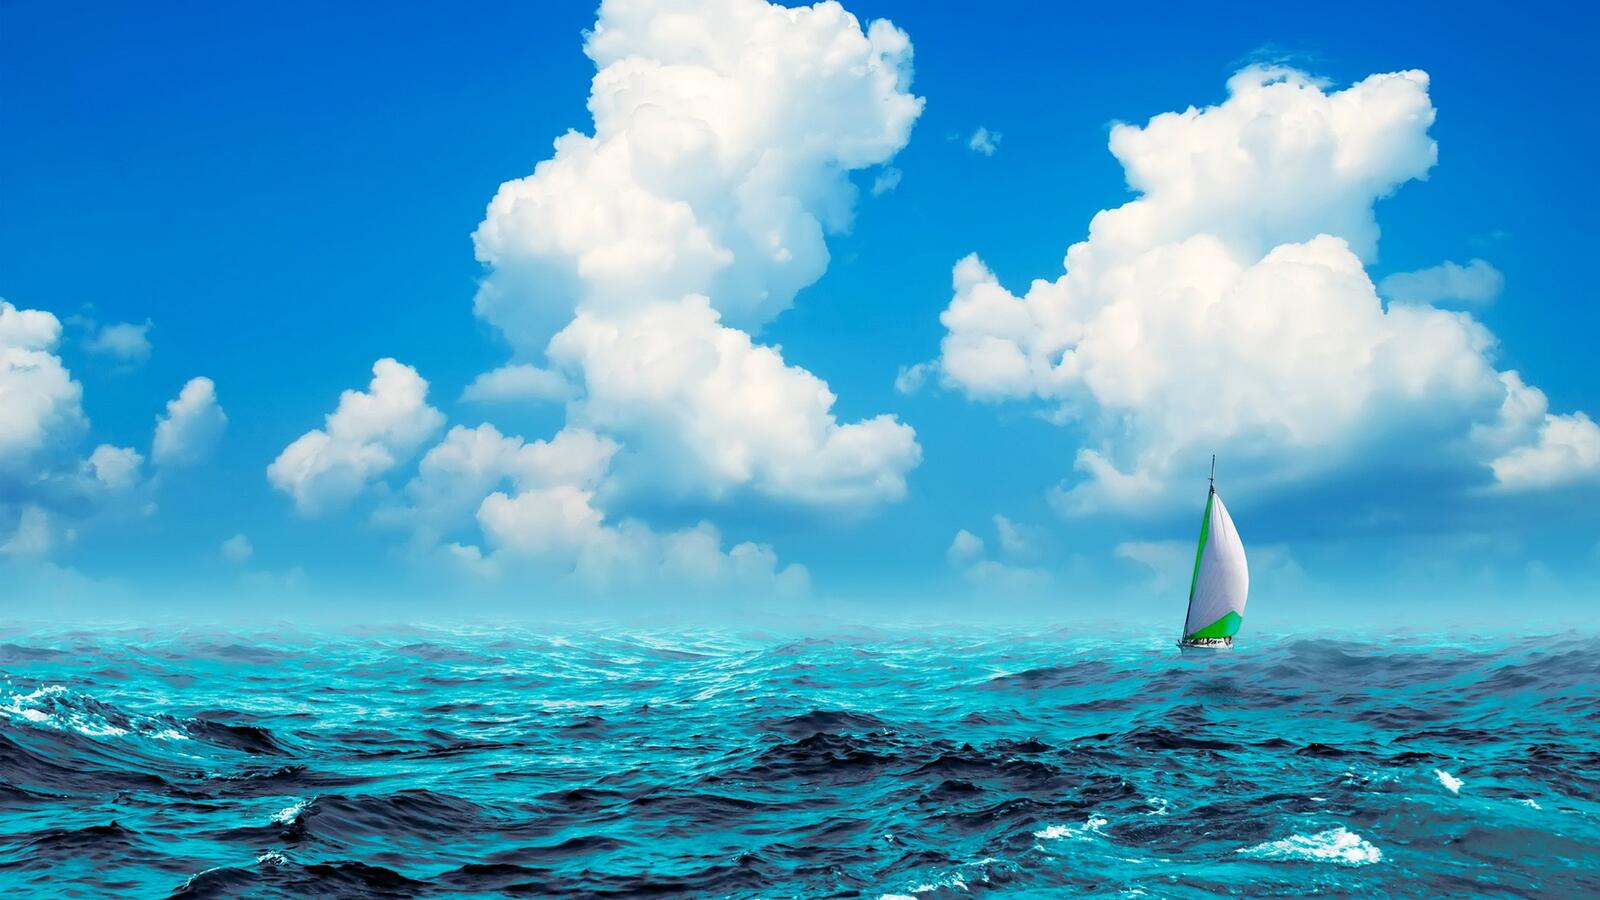 Wallpapers sailboat waves landscapes on the desktop